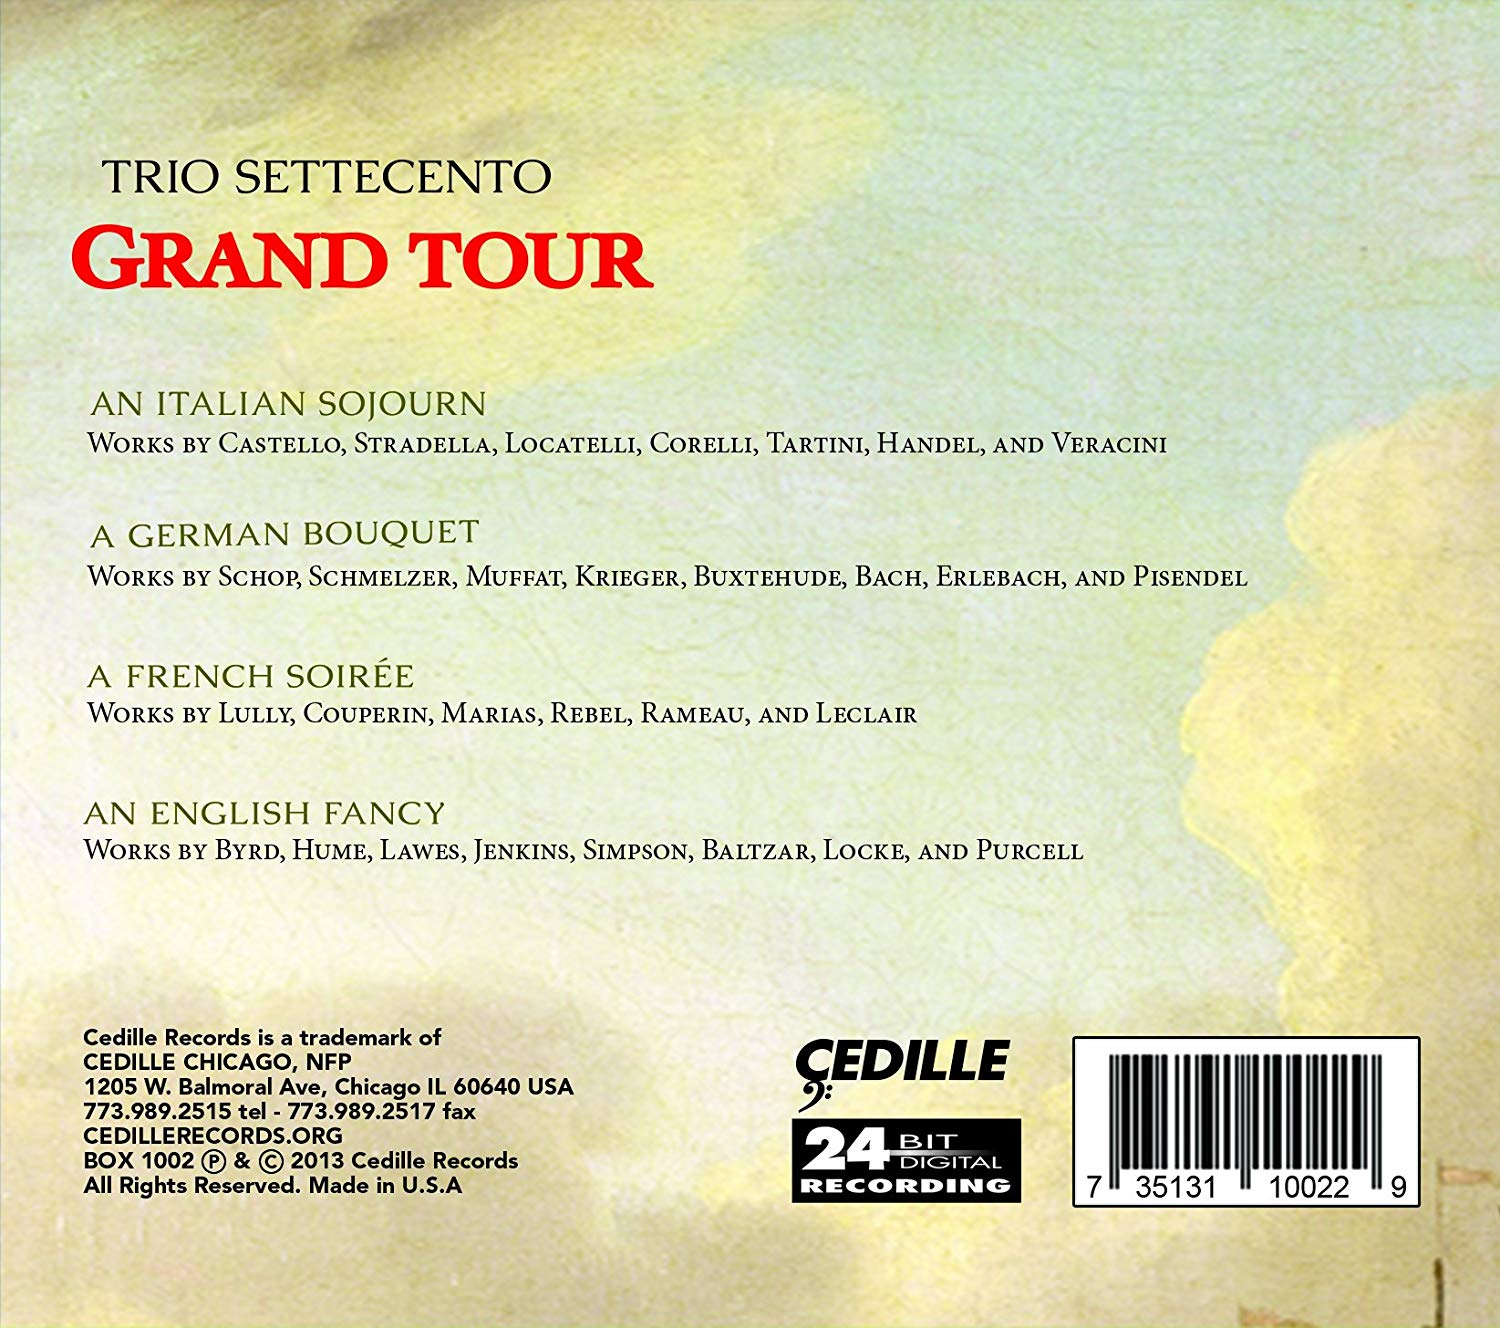 Grand Tour - Castello, Stradella, Marini, Locatelli, Corelli, Tartini, Handel, Veracini, Schmelzer, Muffat, Buxtehude, Bach, ... - slide-1